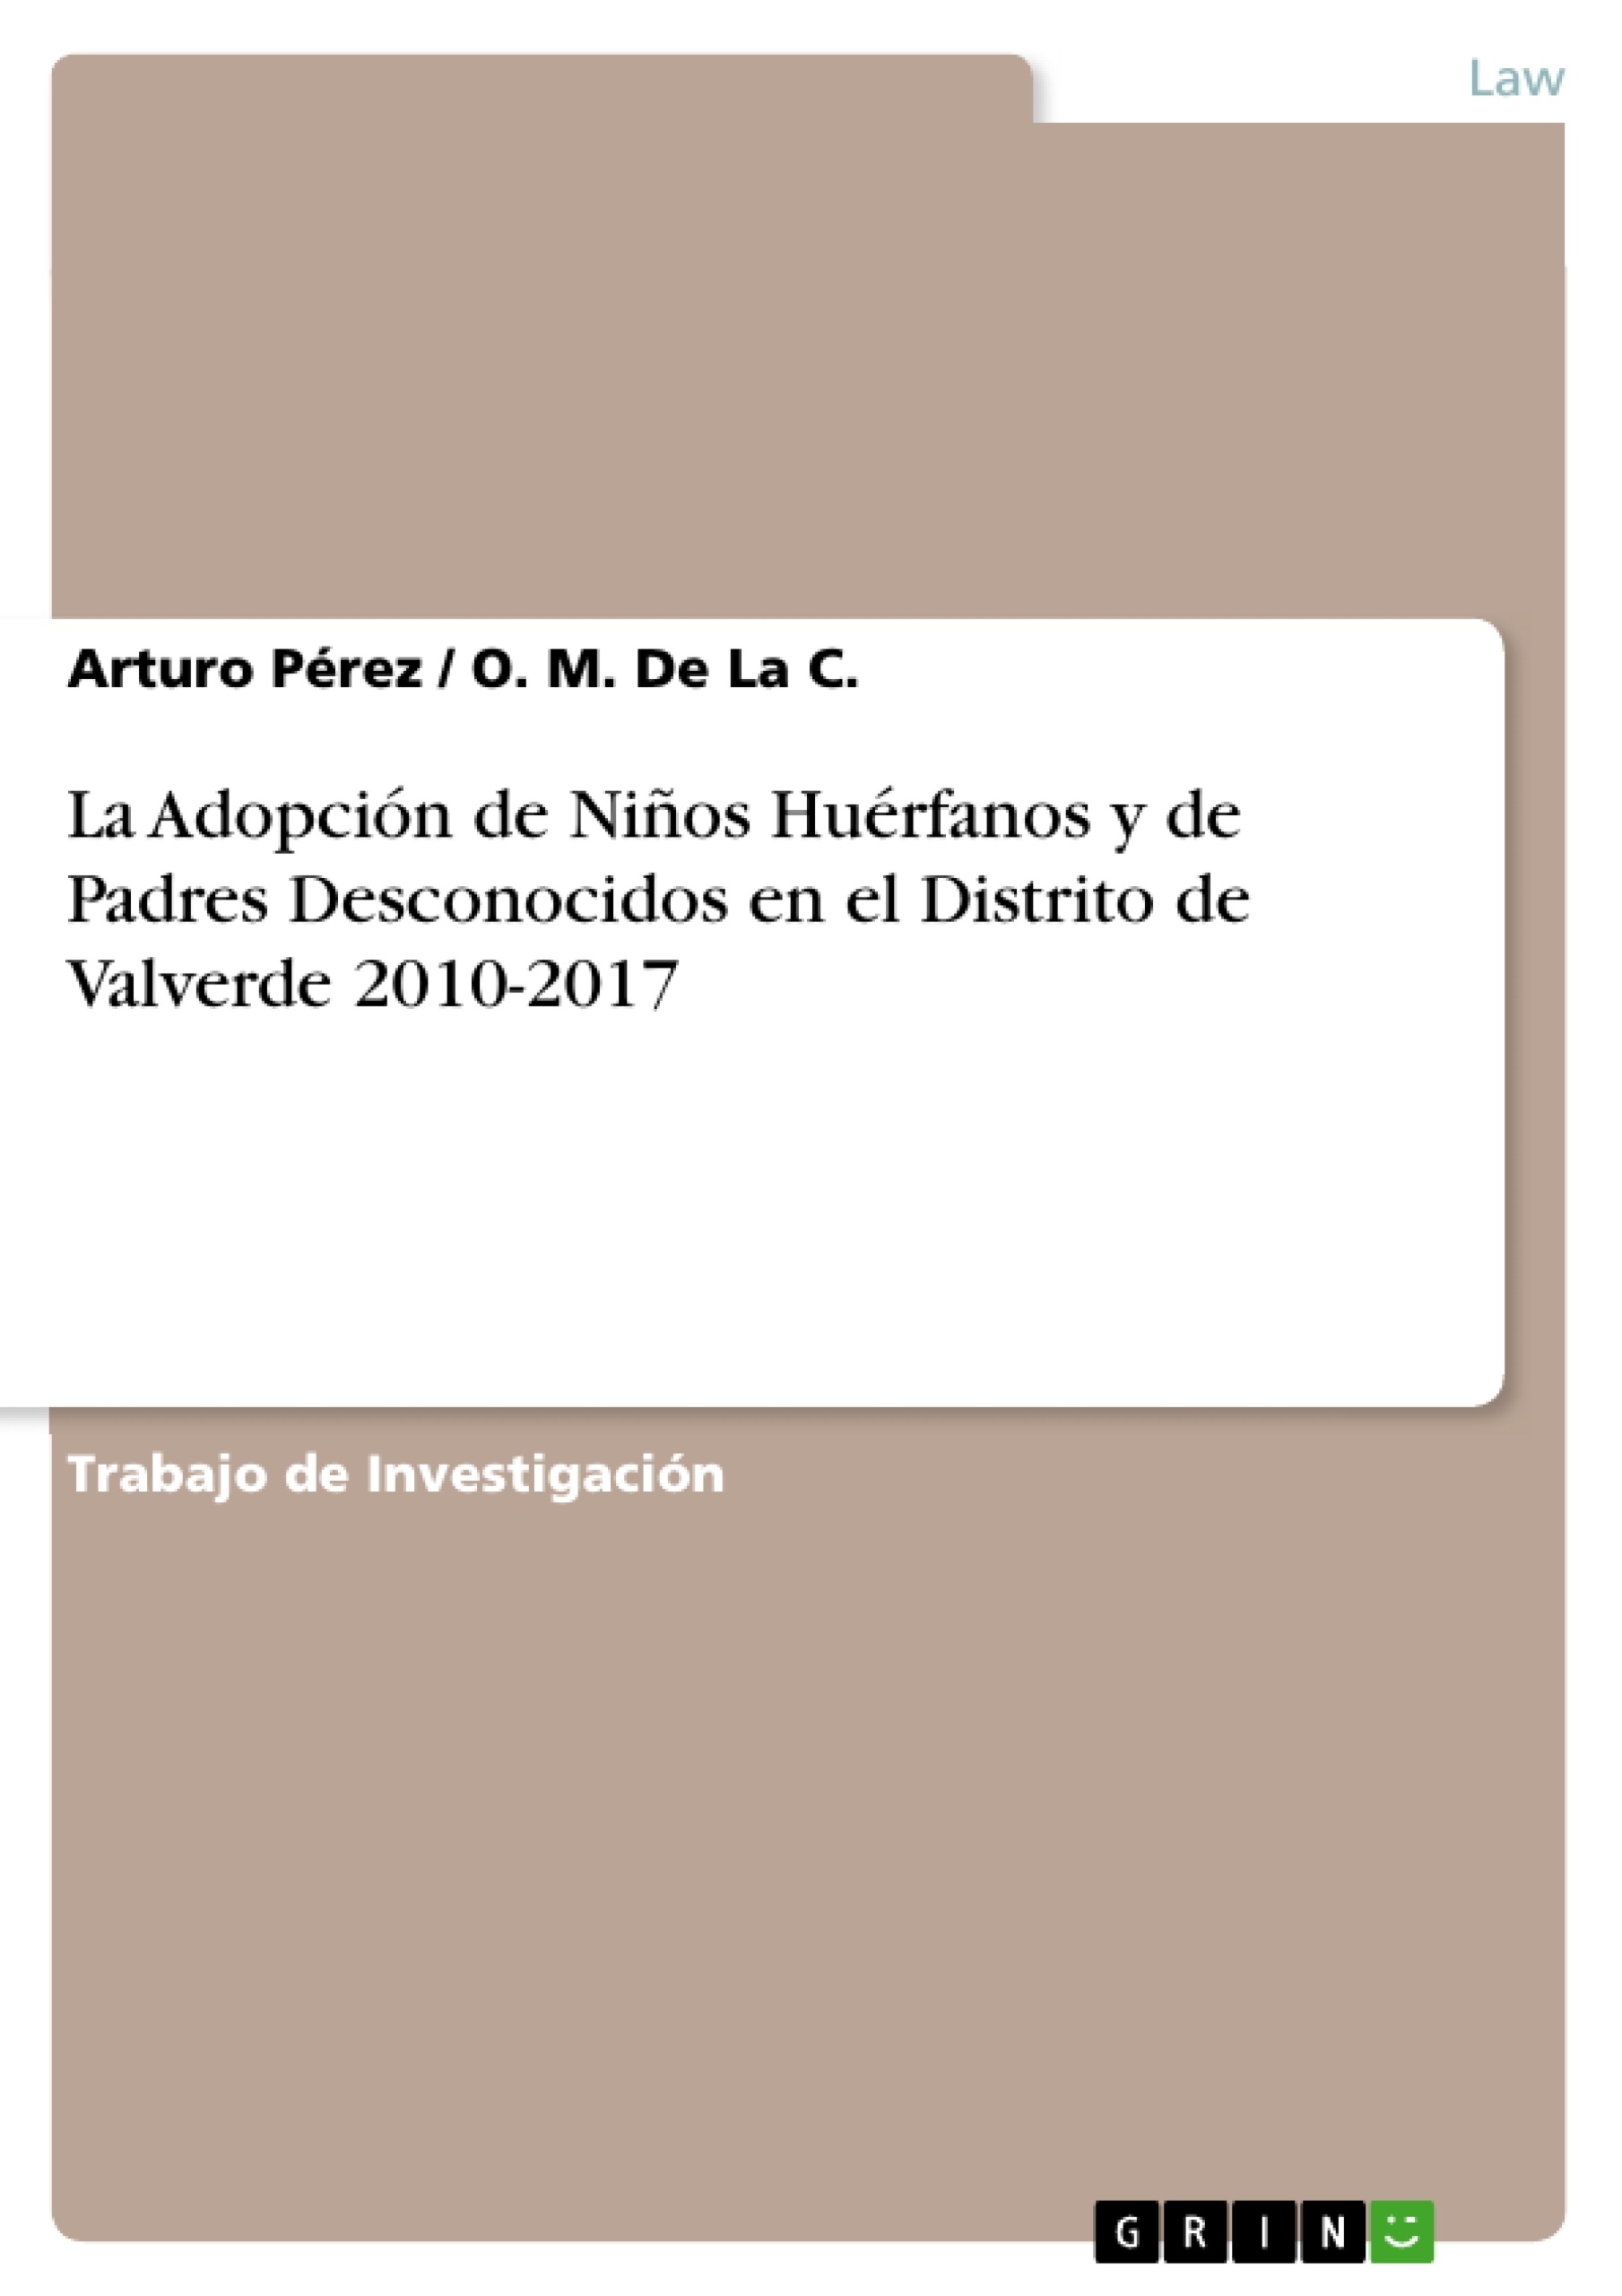 Titre: La Adopción de Niños Huérfanos y de Padres Desconocidos en el Distrito de Valverde 2010-2017